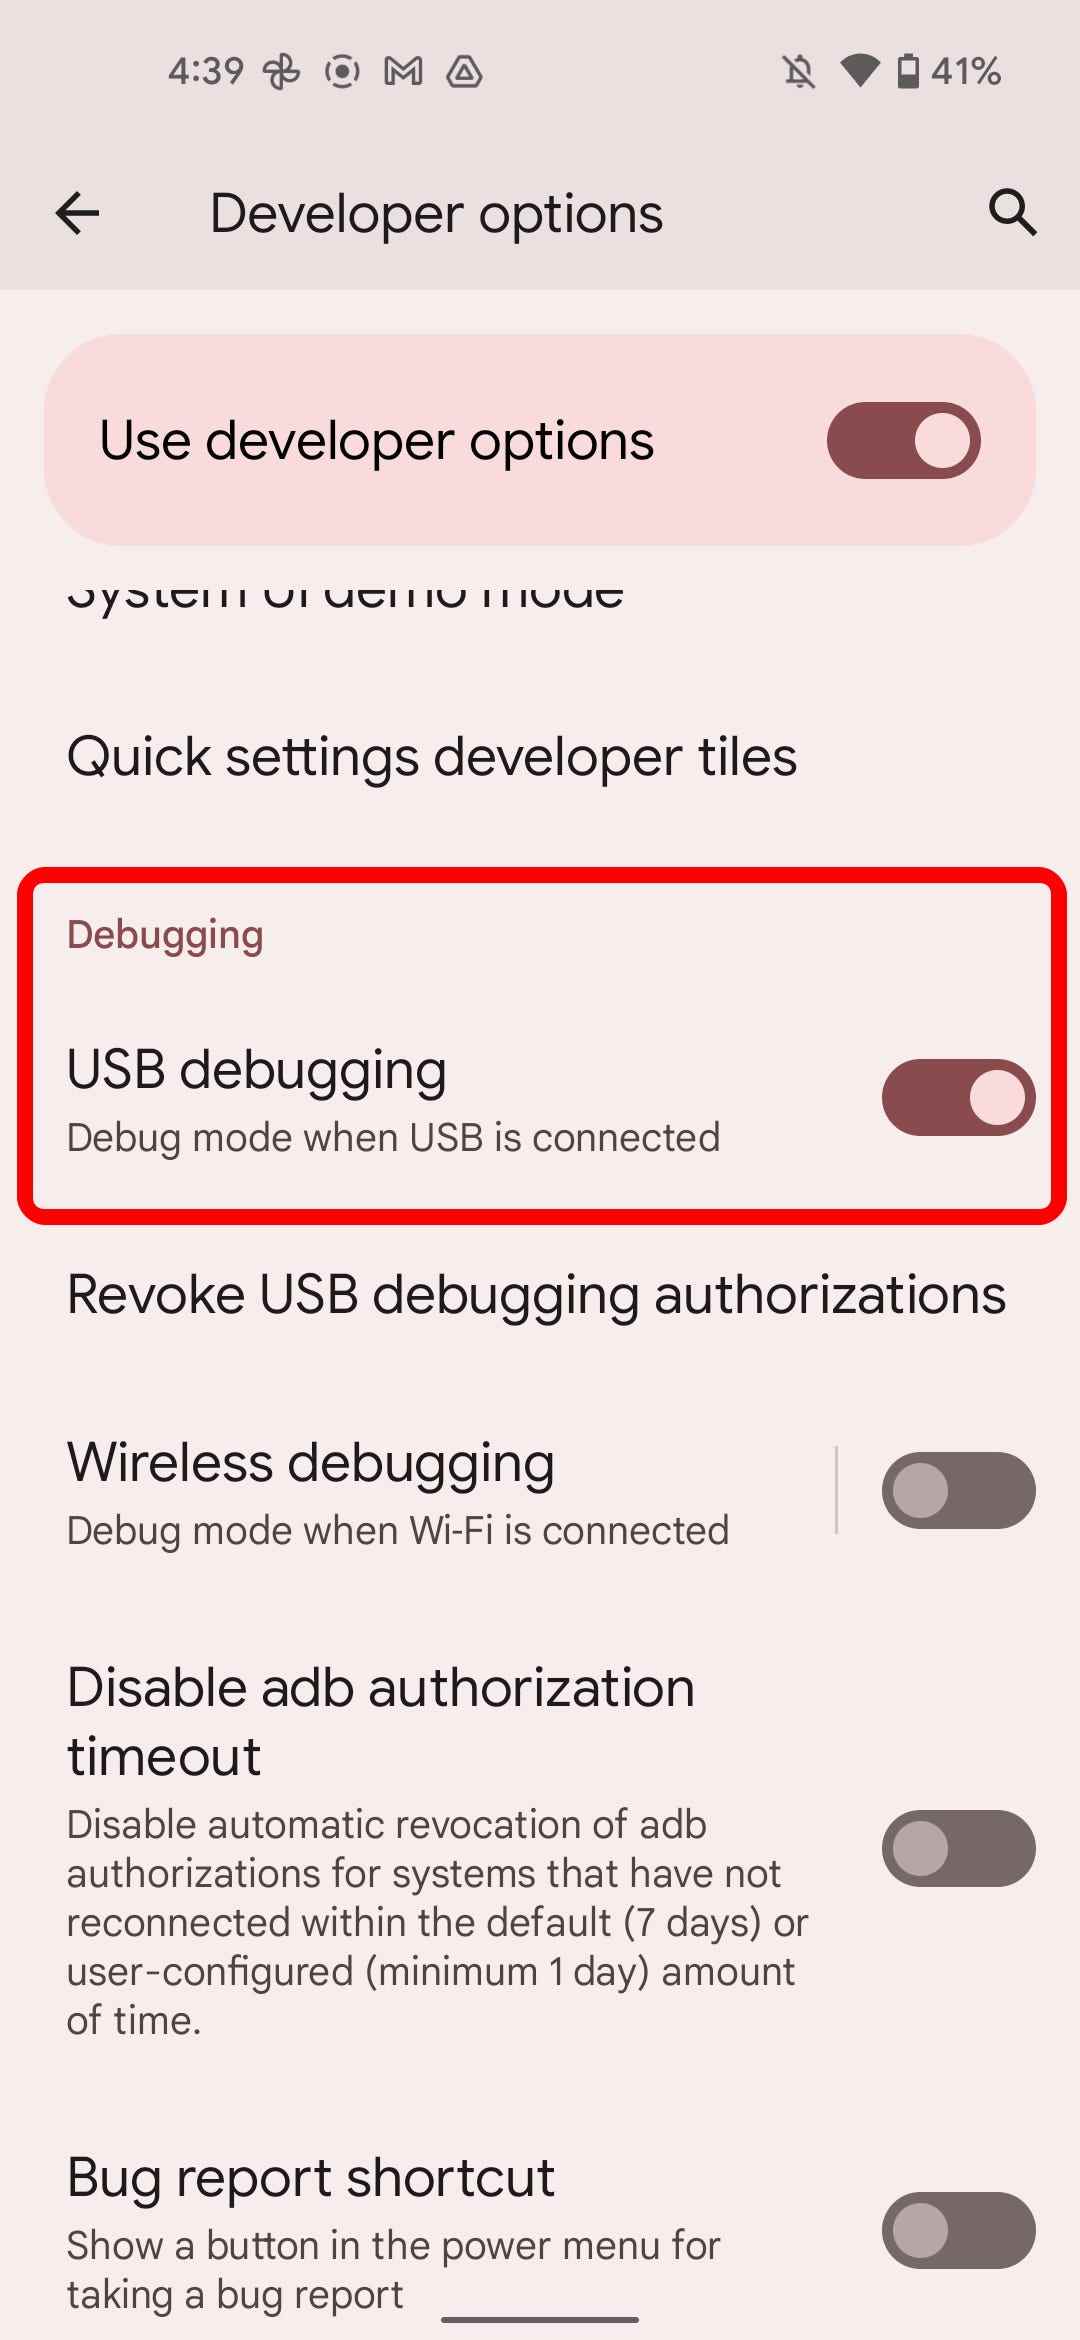 Die USB-Debugging-Option im Entwickleroptionsmenü von Android.